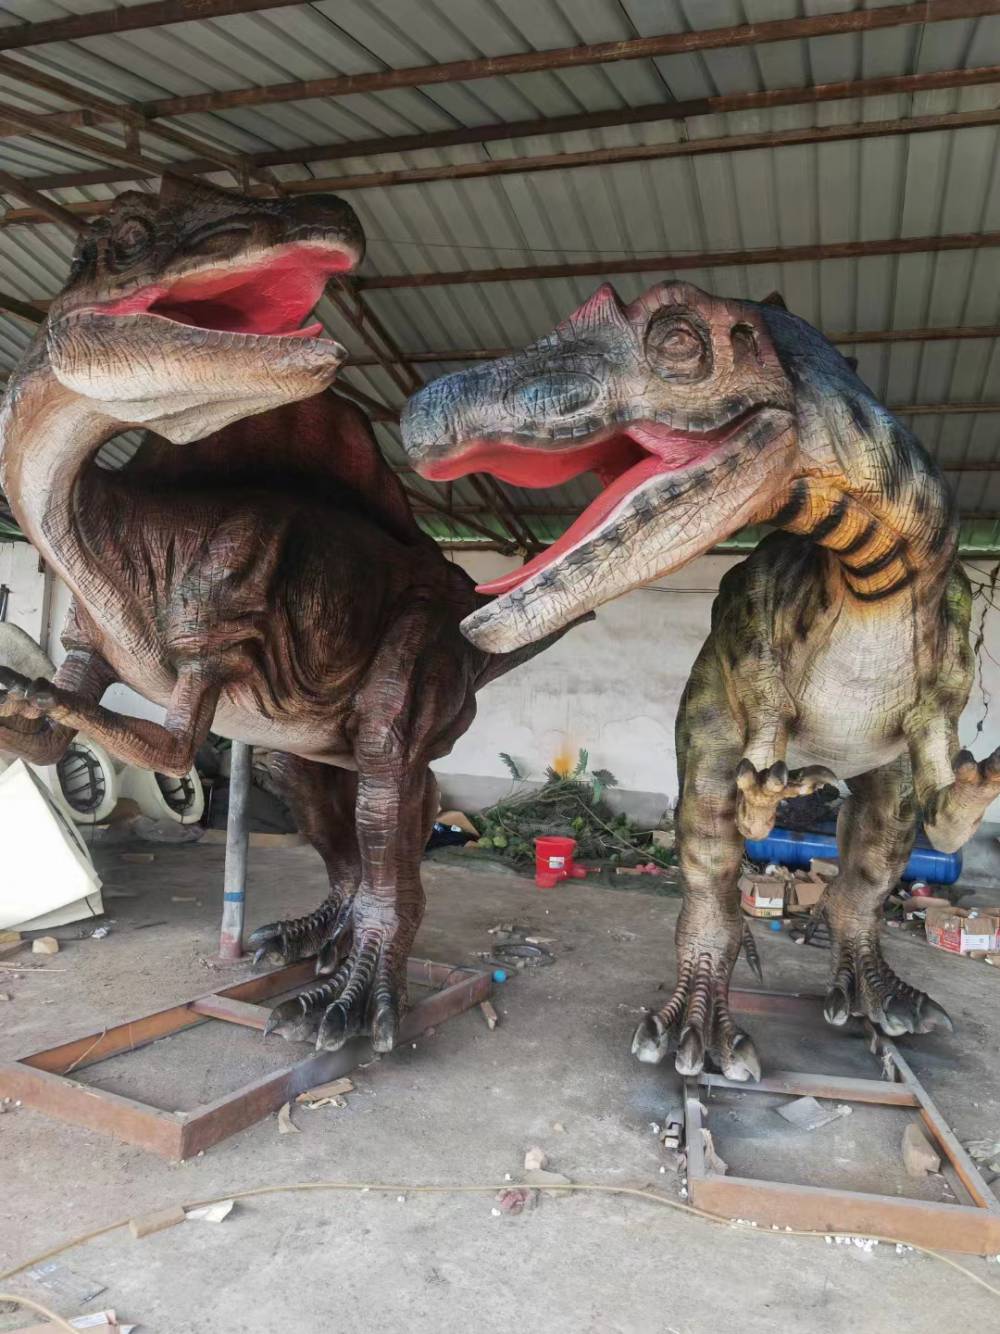 仿真恐龙模型出售出租15米巨型霸王龙租赁插电即会动会叫眨眼睛